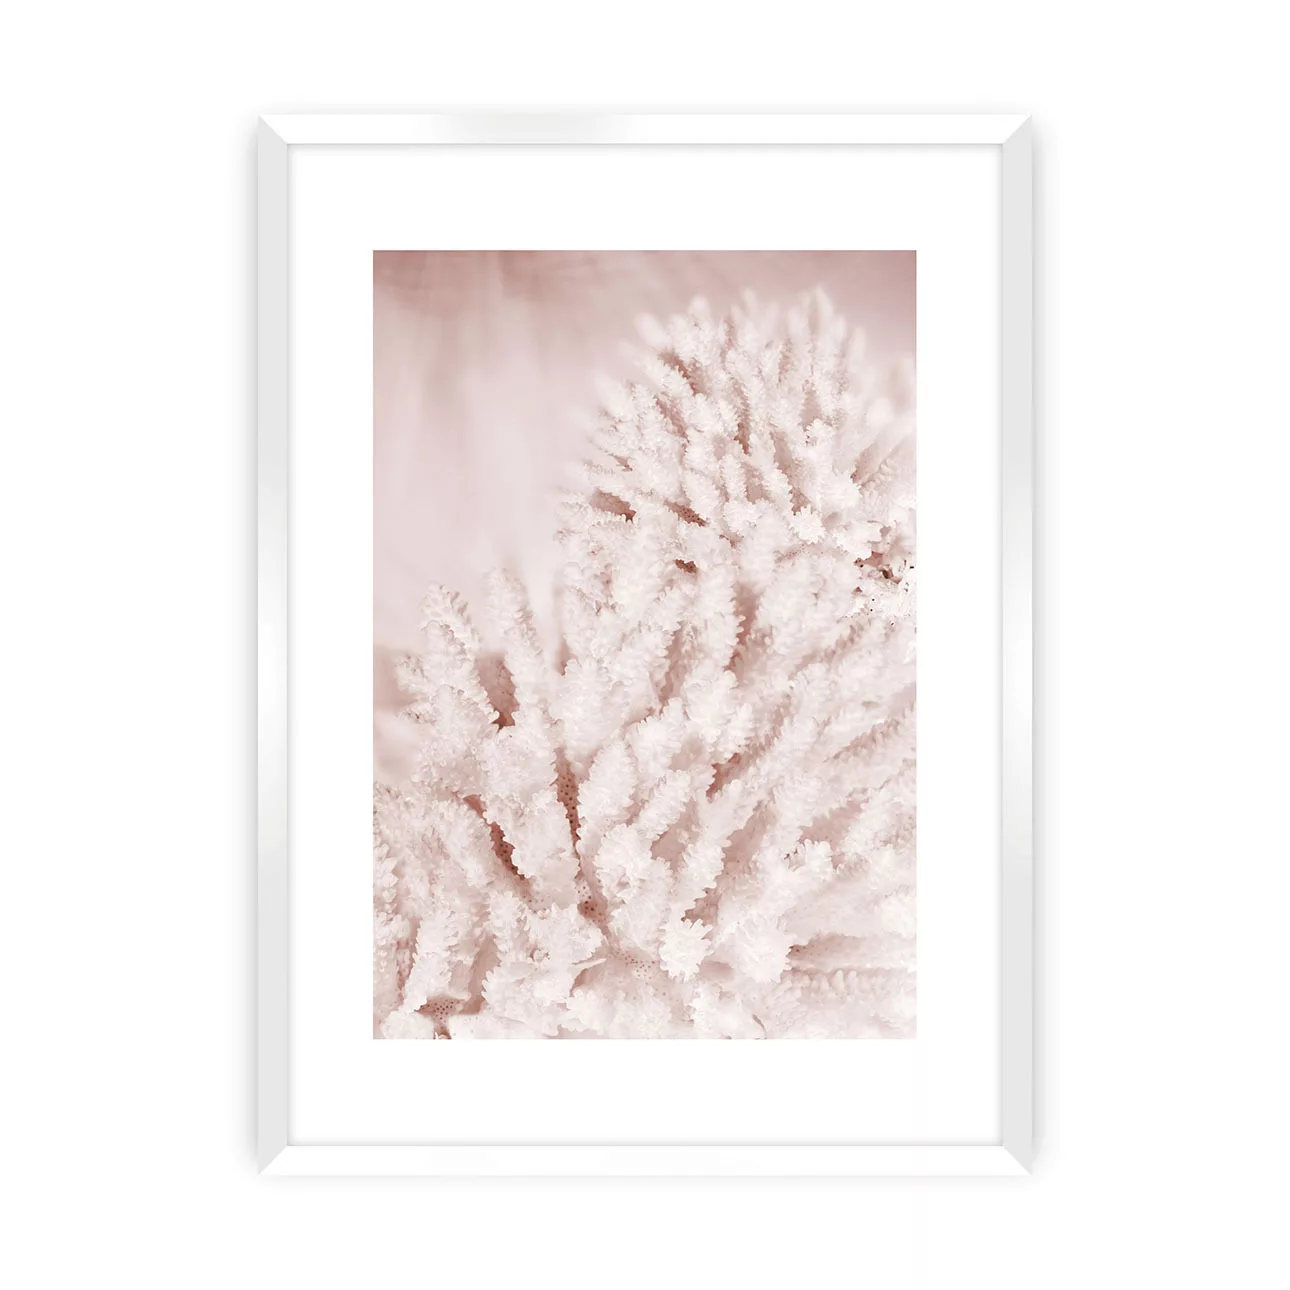 Poster Pastel Pink II, 70 x 100 cm, Rahmen wählen: weisser Rahmen günstig online kaufen